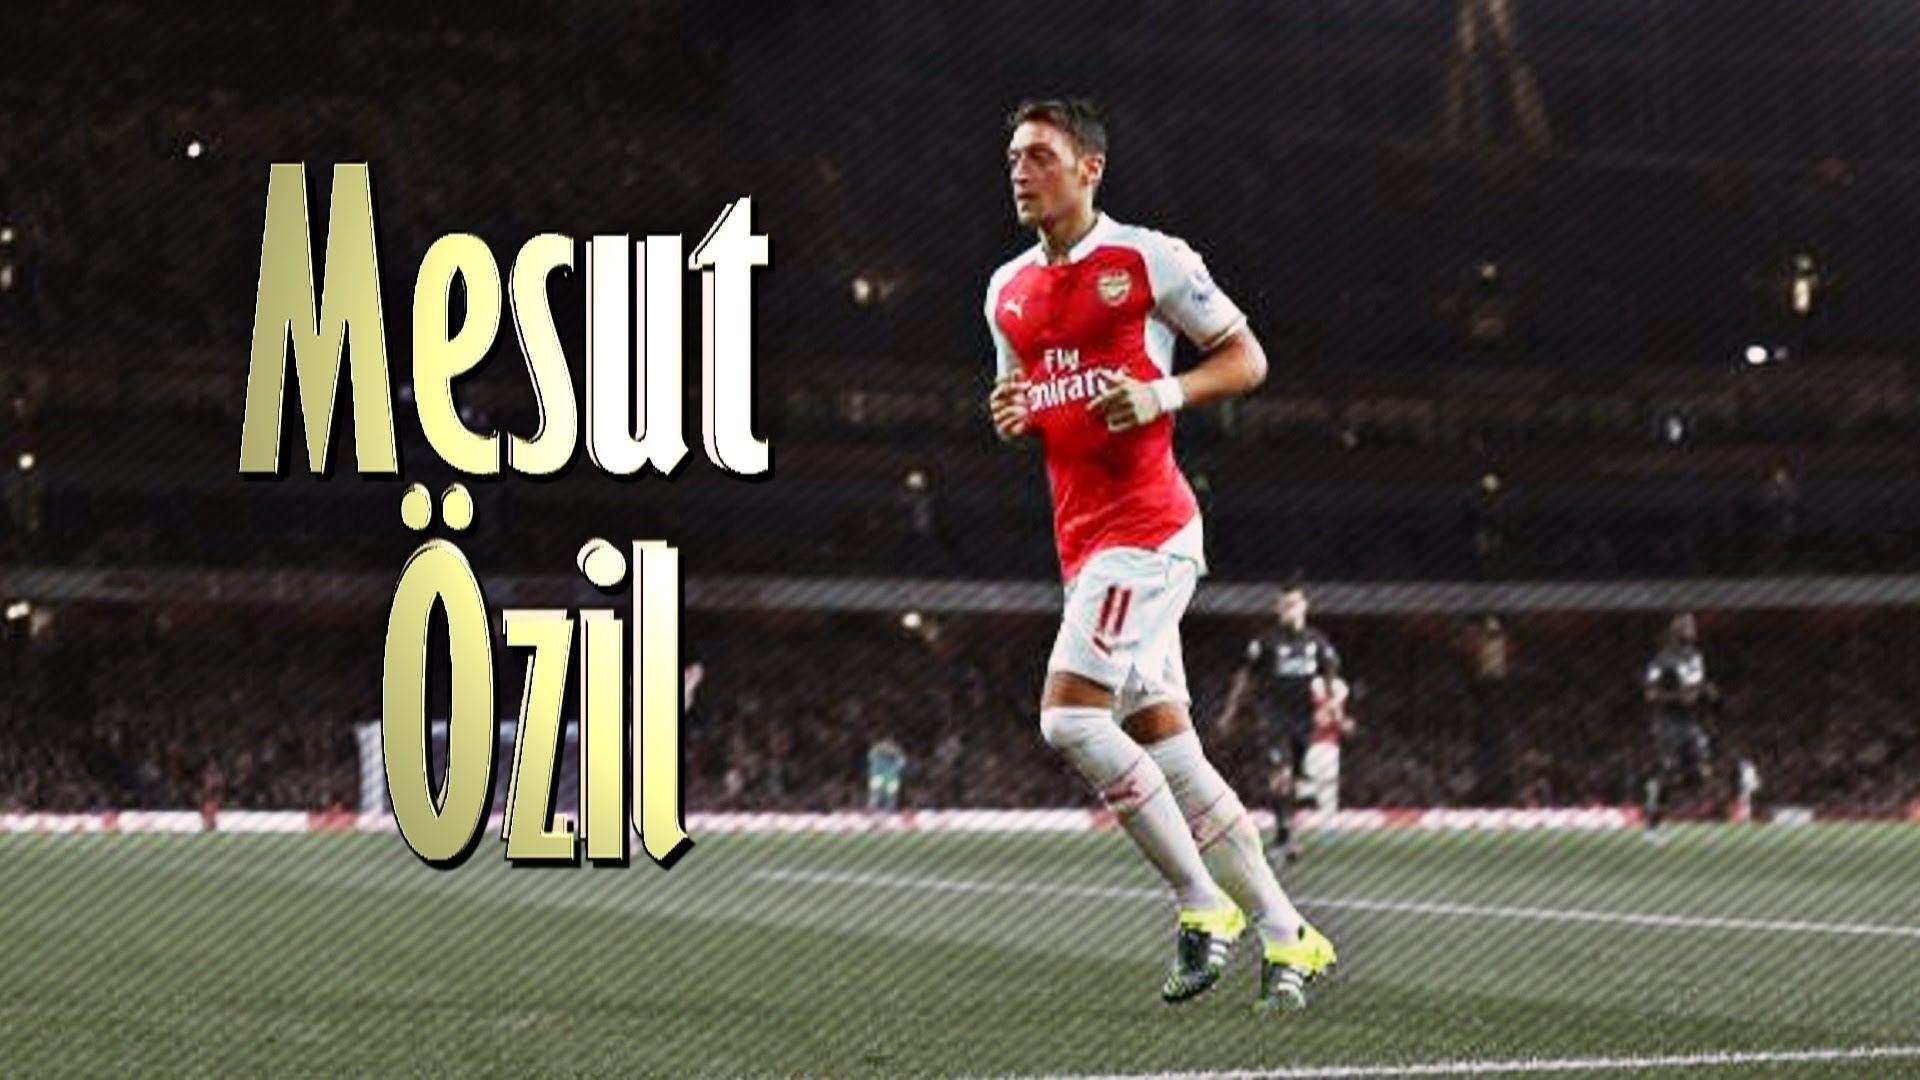 Mesut Özil Skills and Goals